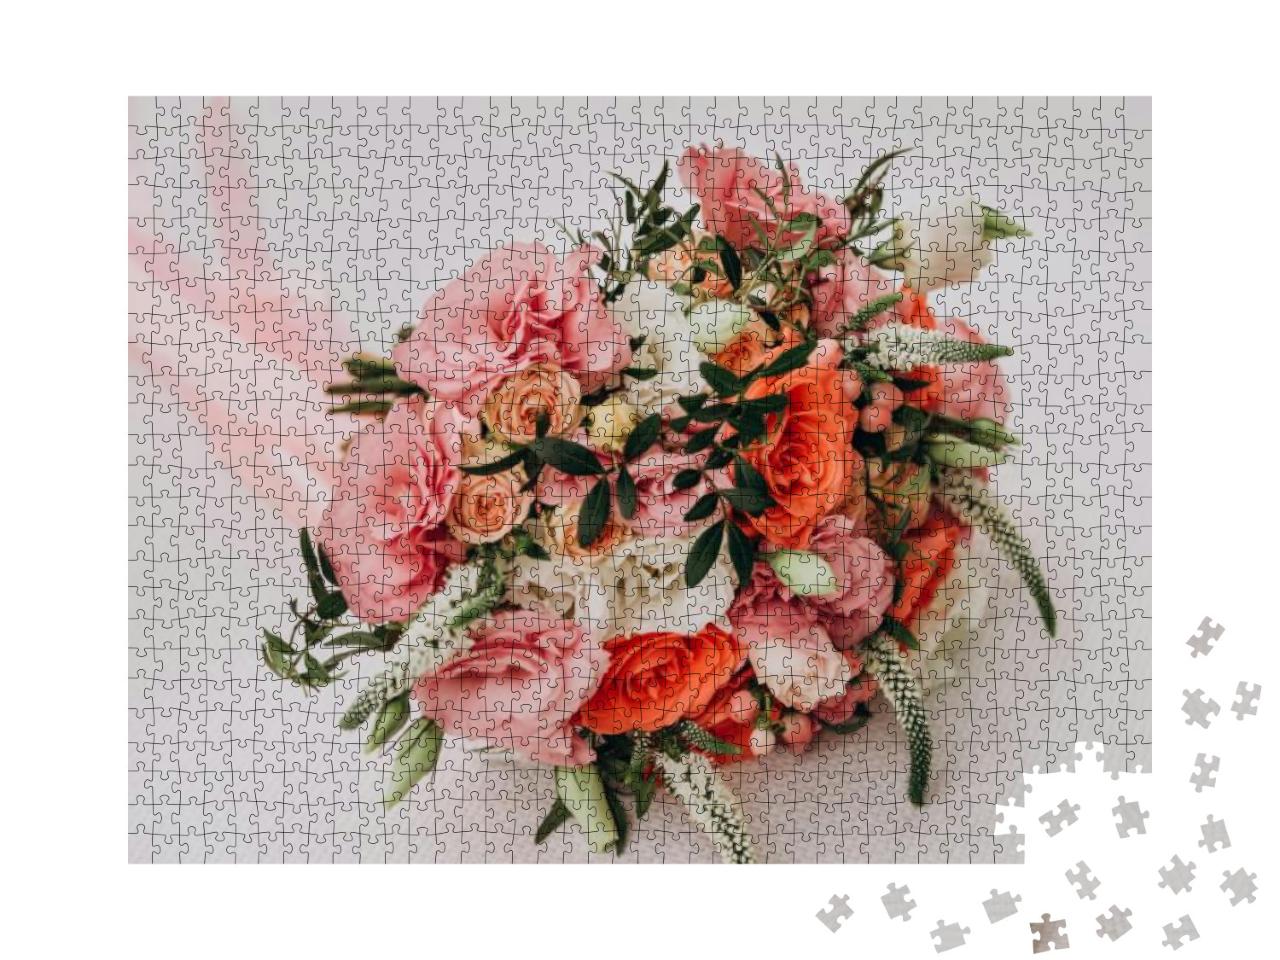 Puzzle 1000 Teile „Mädchen hält einen Hochzeitsstrauß in den Händen, rosa Rosen“